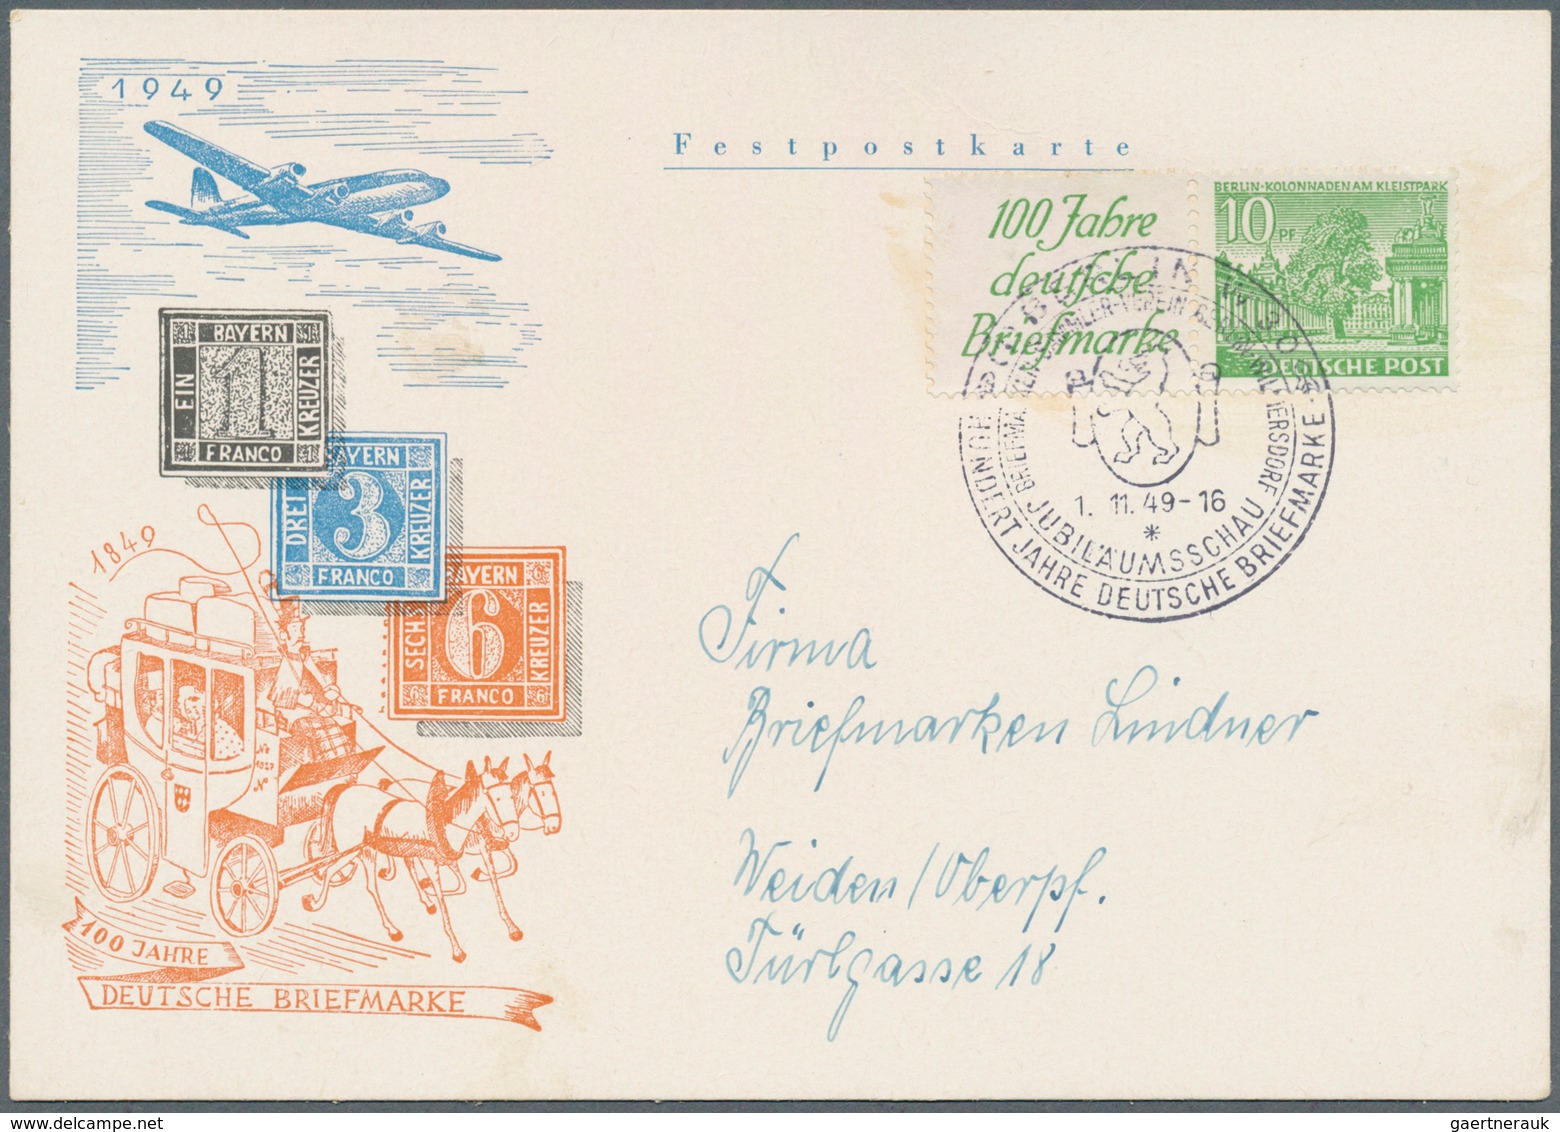 20597 Berlin - Zusammendrucke: 1949, Berliner Bauten, fünf FDC jeweils mit waagerechten Zusammendrucke "10